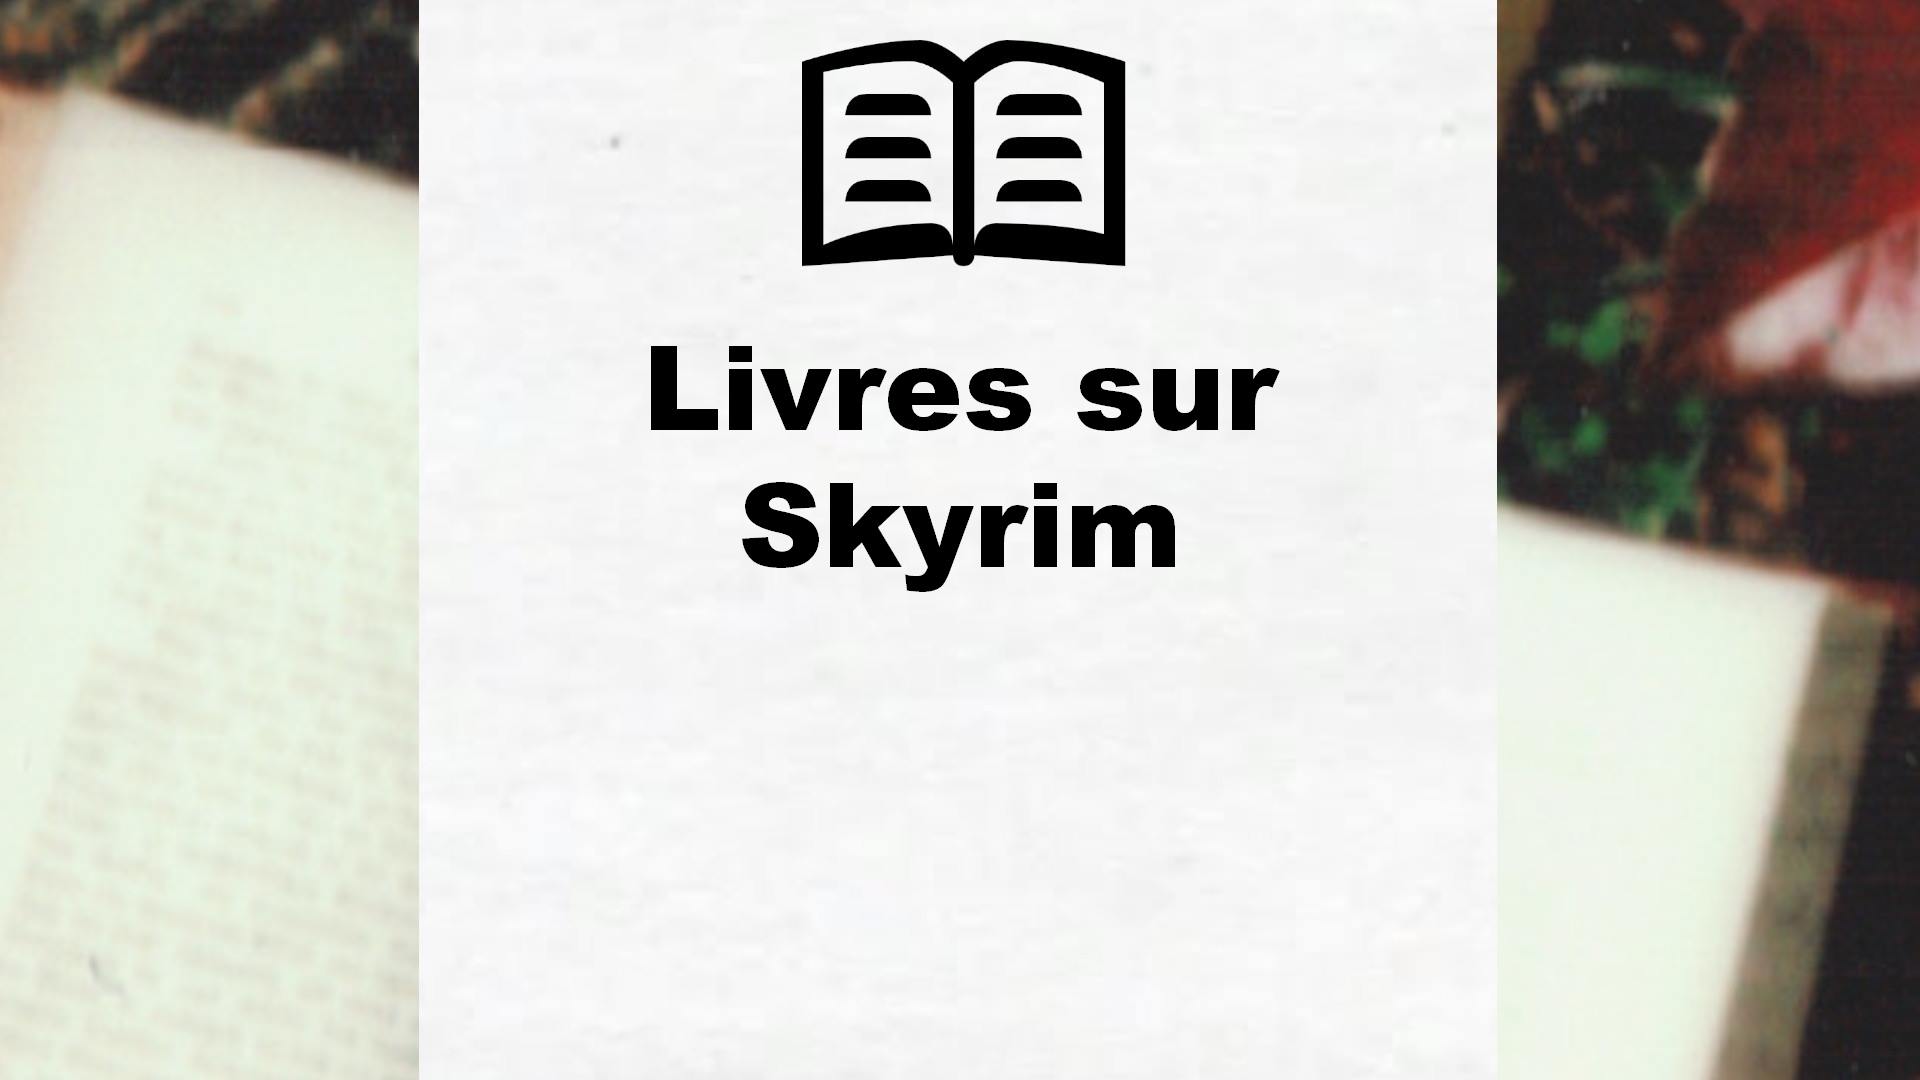 Livres sur Skyrim